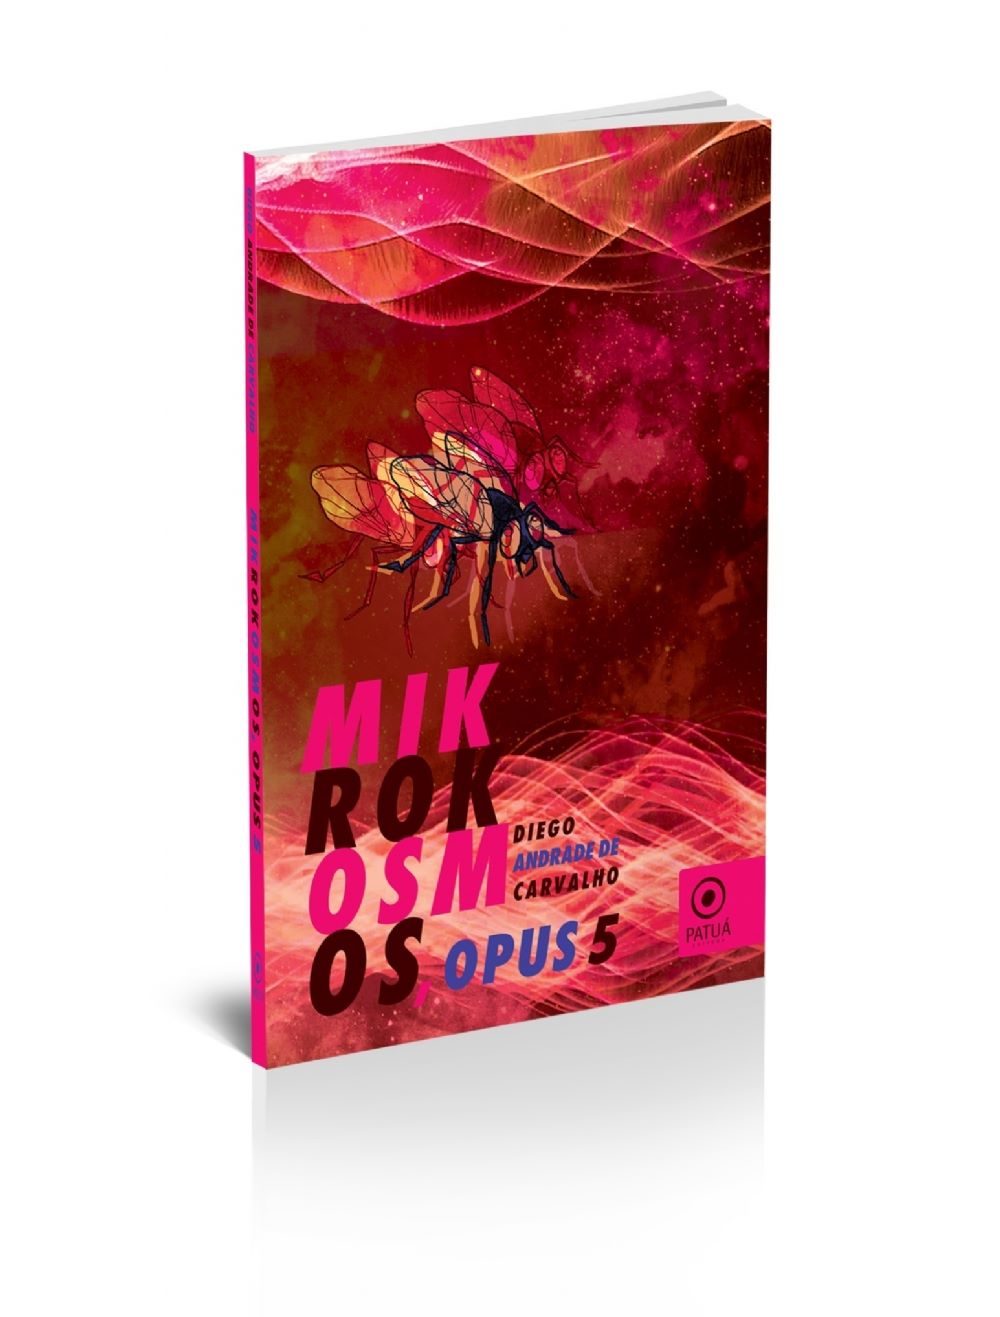 mickrokosmos - Resenha do livro Mikrokosmos, opus 5, (editora Patuá, poesia) de Diego Andrade de Carvalho, por Rafael de Oliveira Fernandes